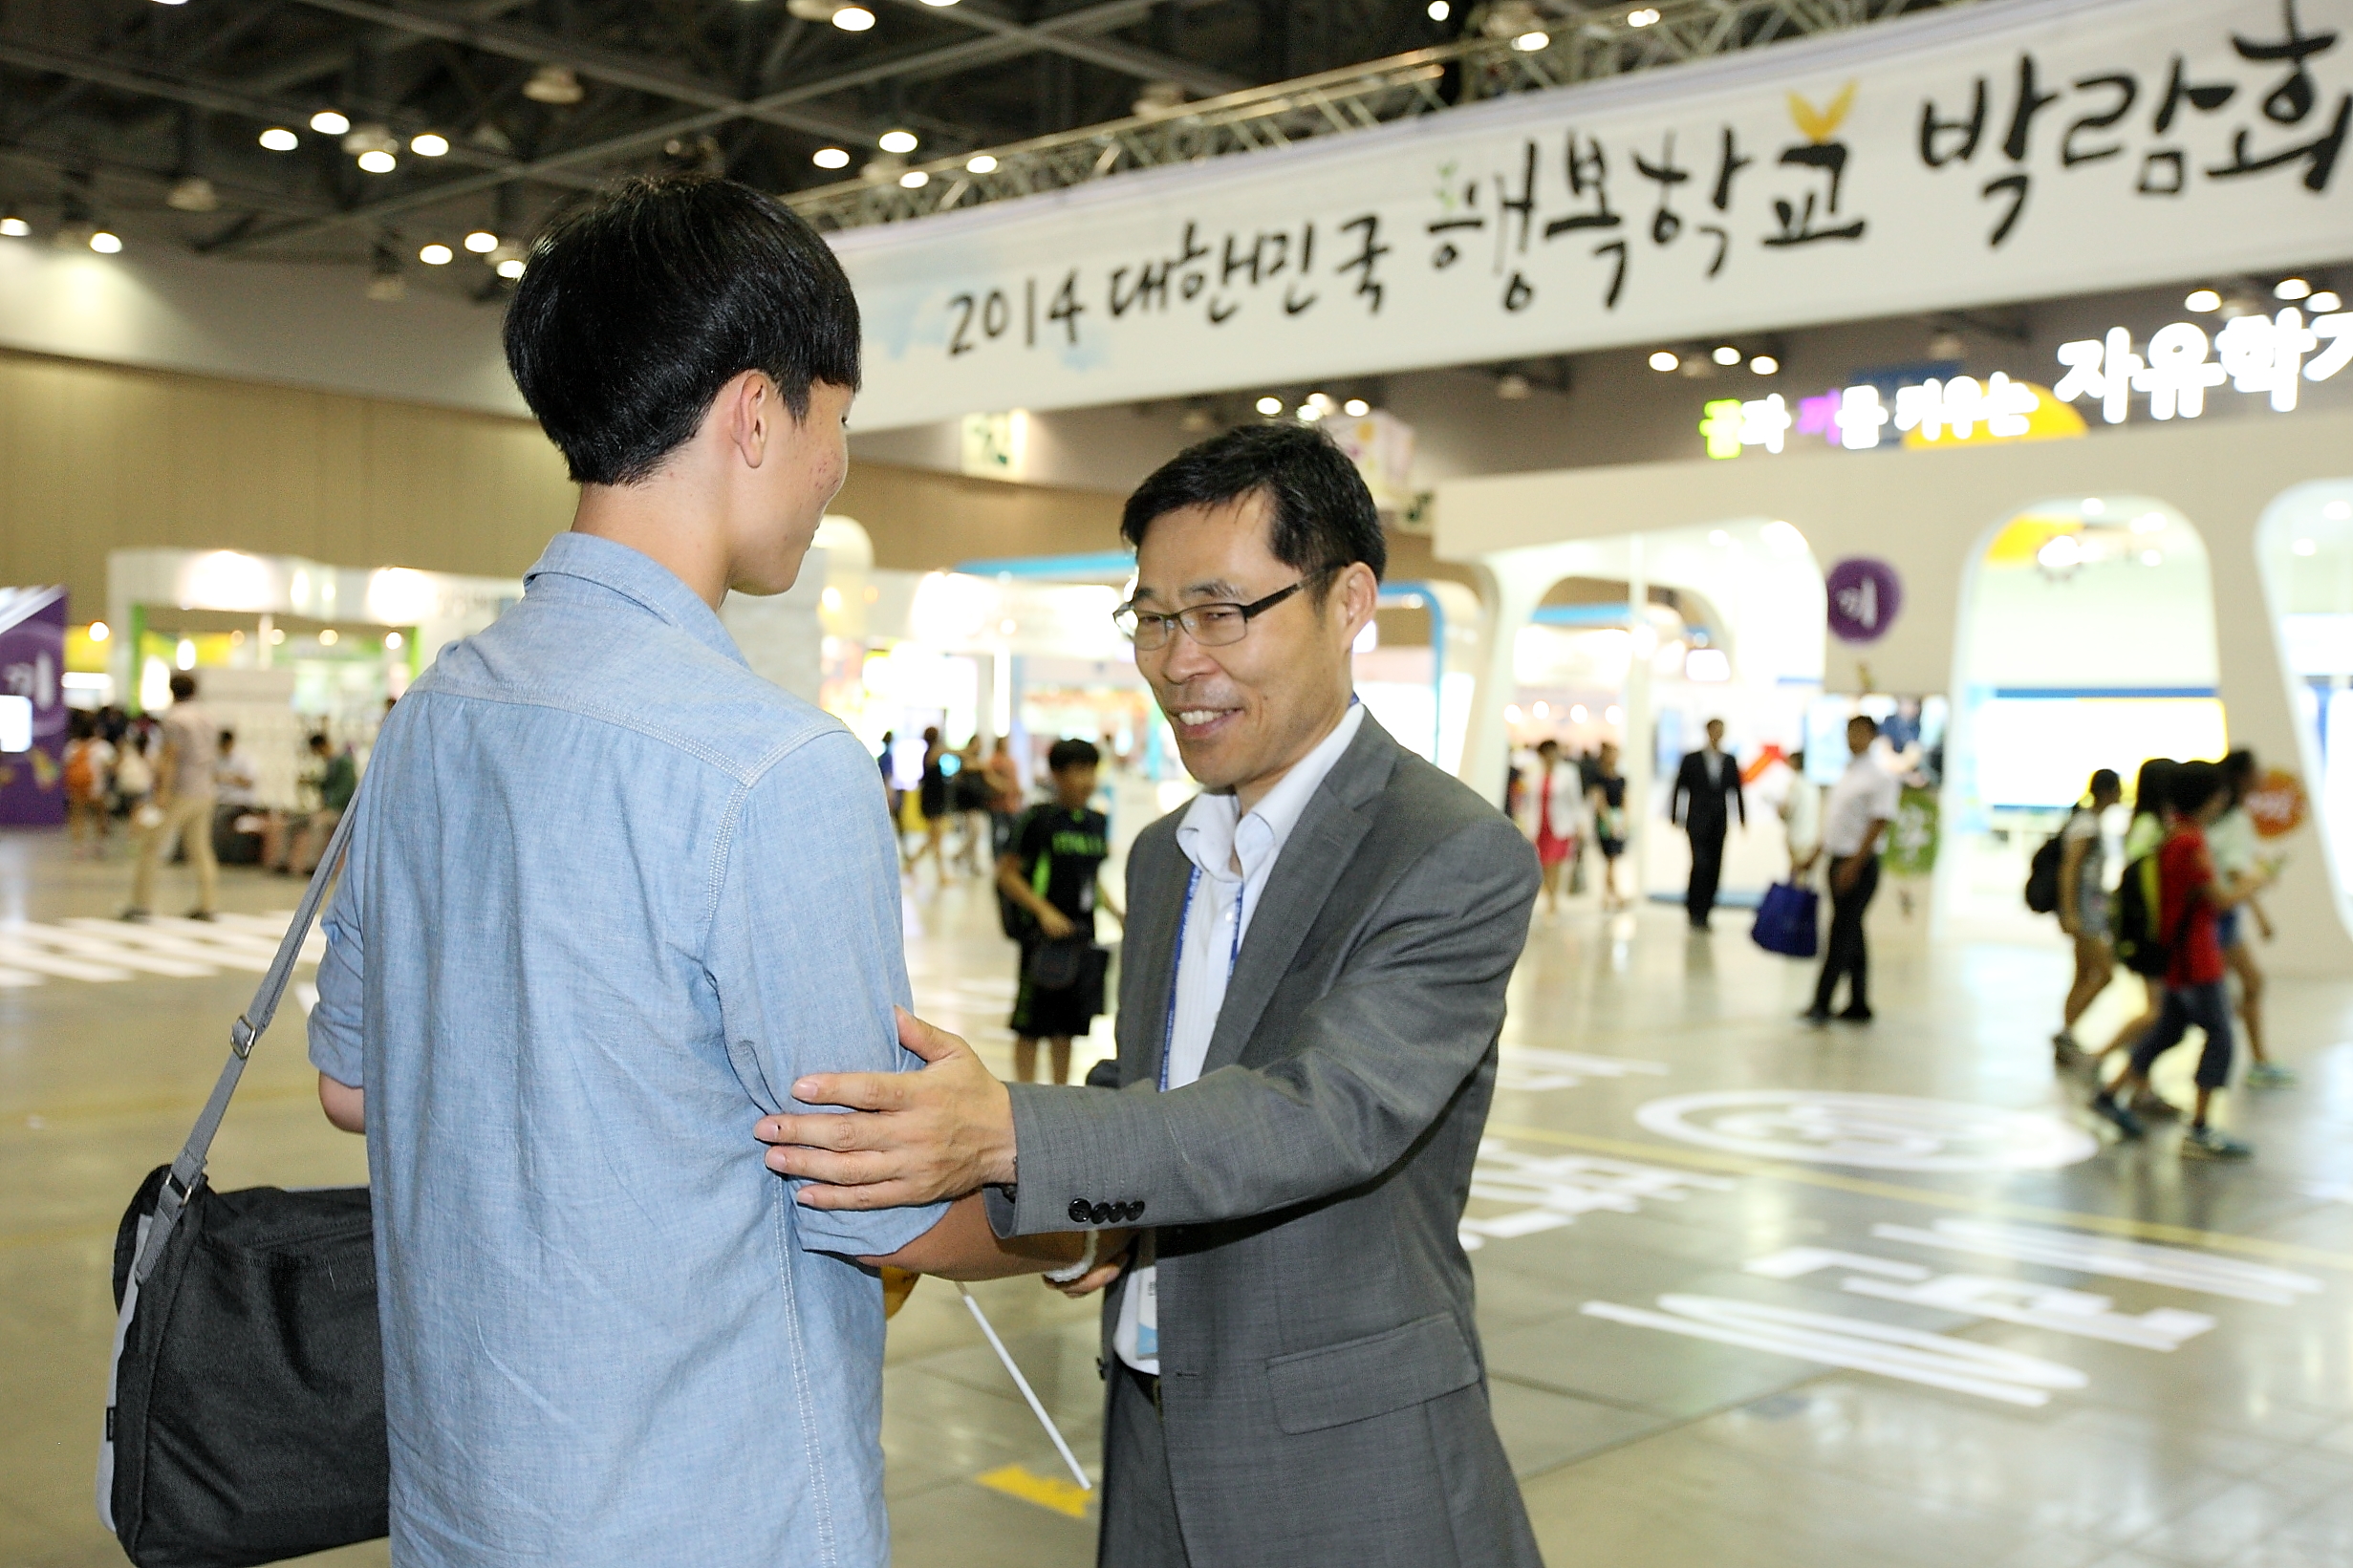 2014 대한민국 행복학교 박람회 참여 학생을 격려해 주는 모습